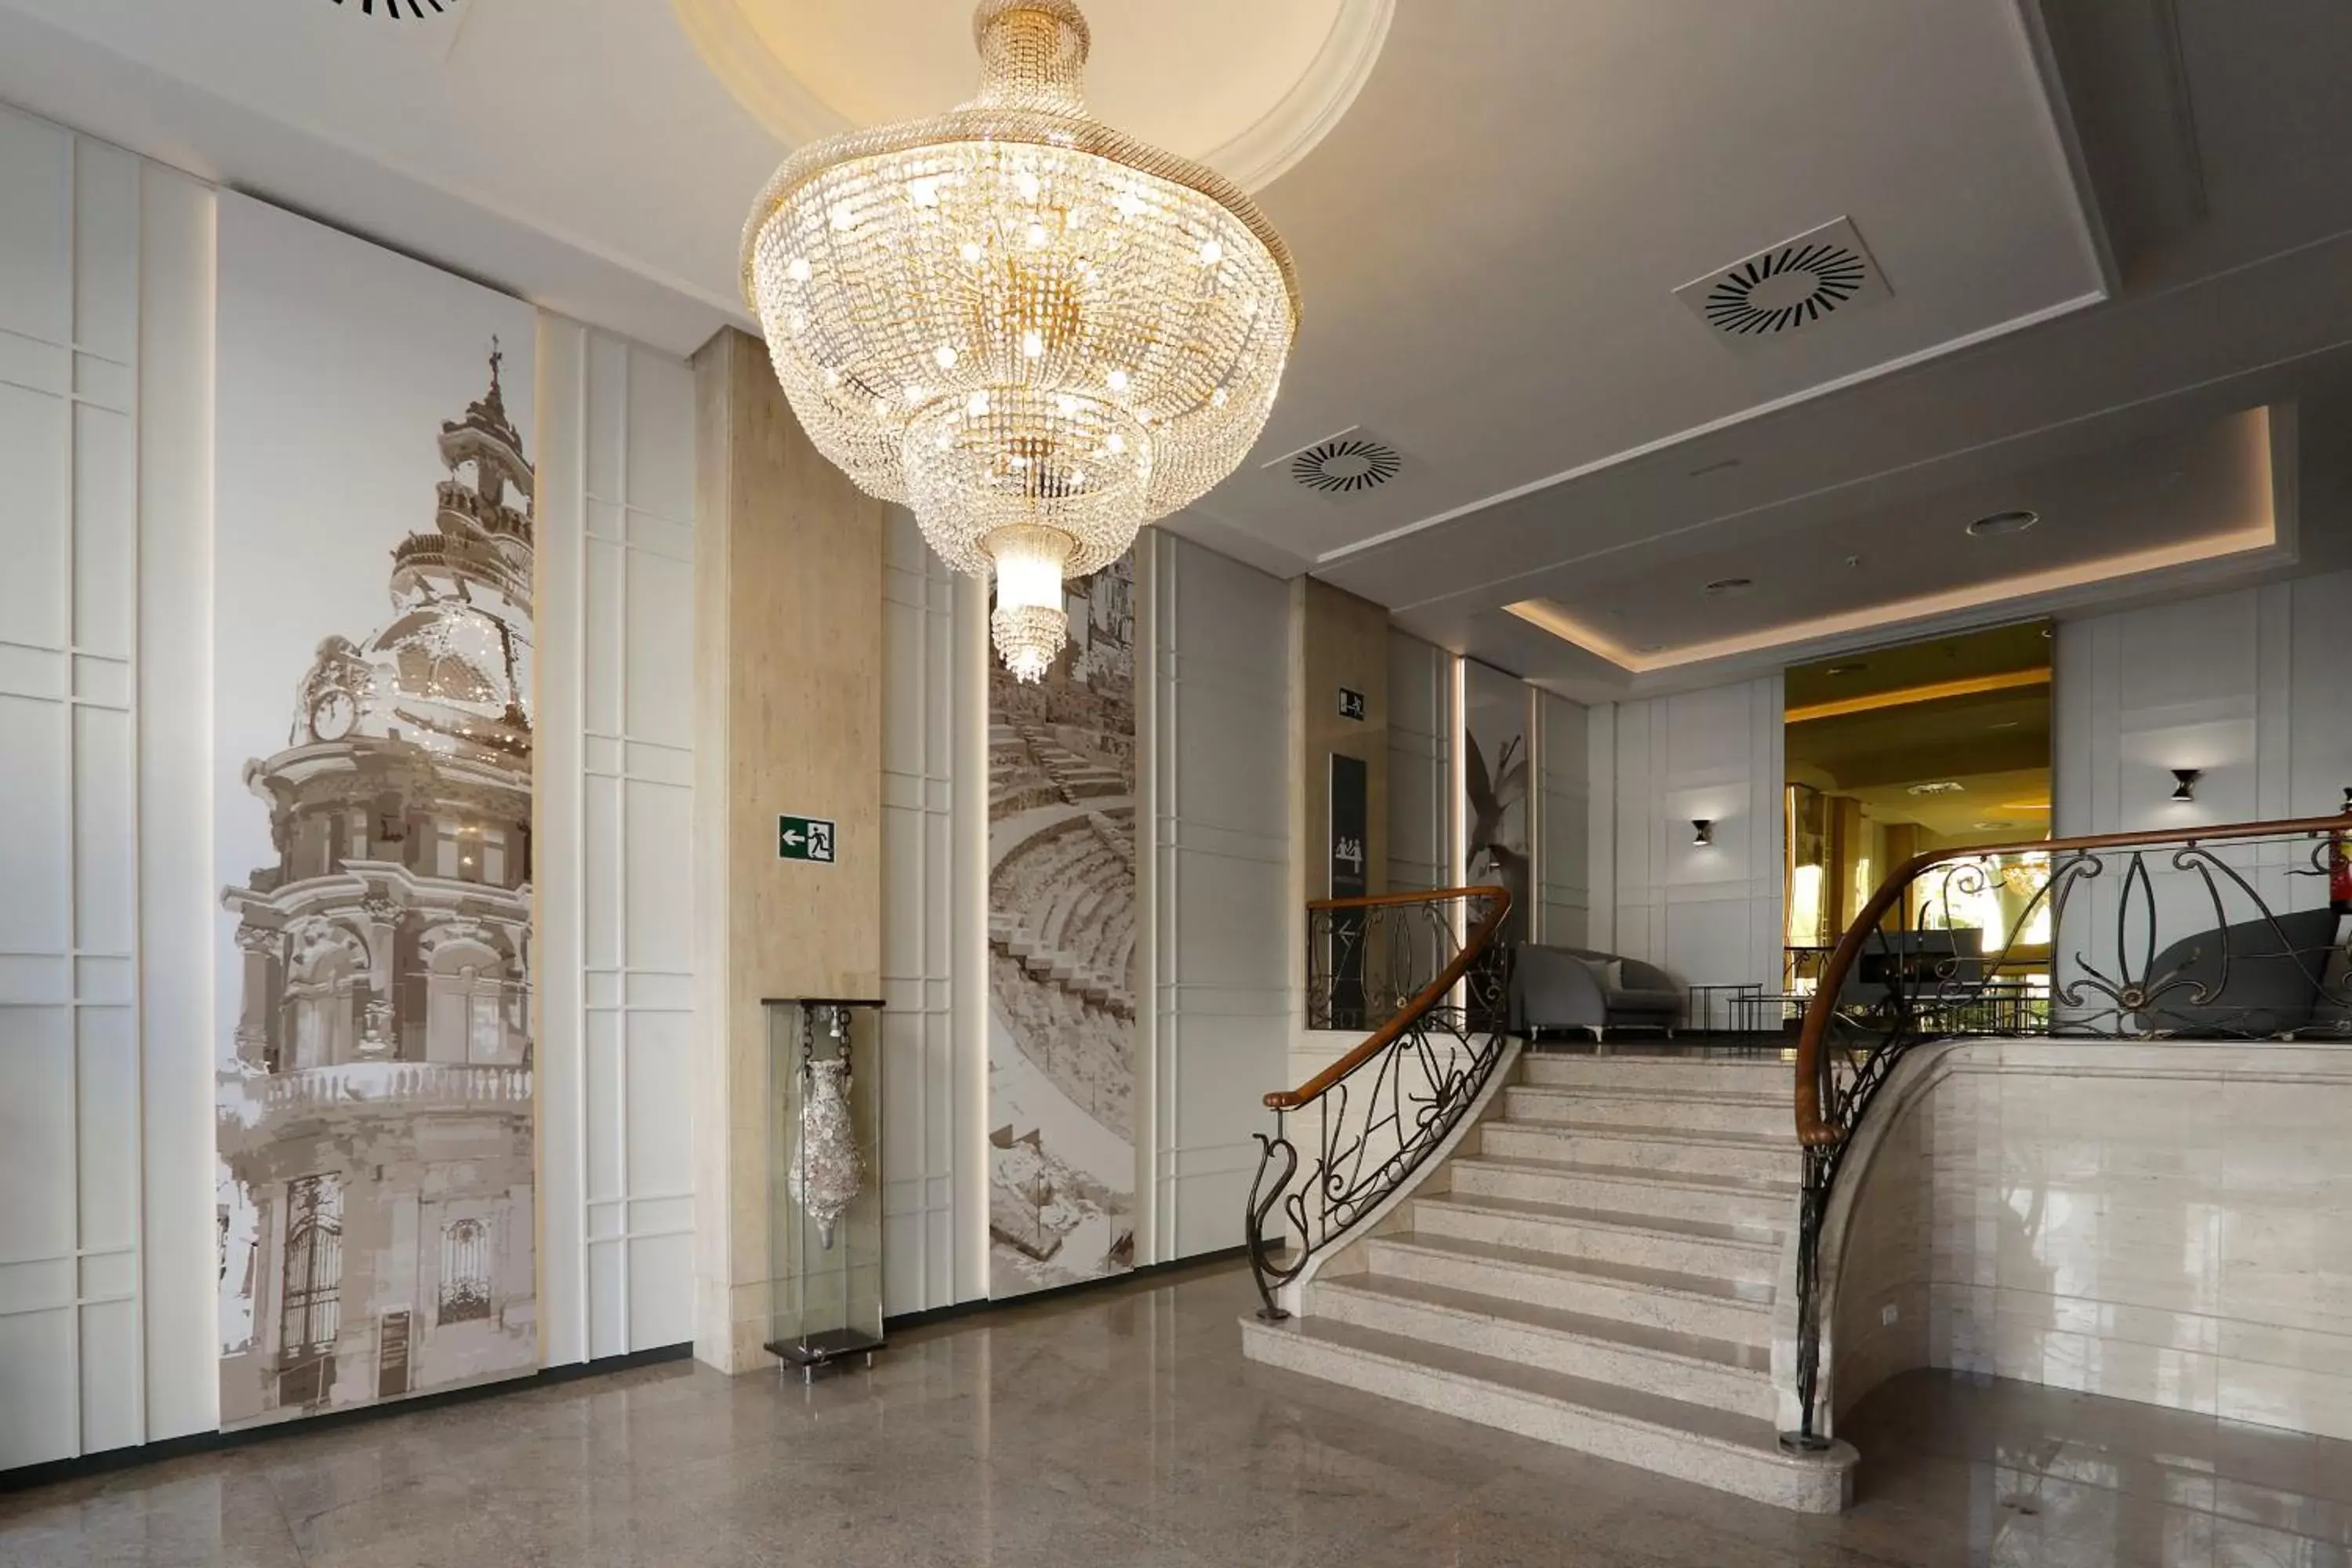 Lobby or reception, Lobby/Reception in Sercotel Alfonso XIII